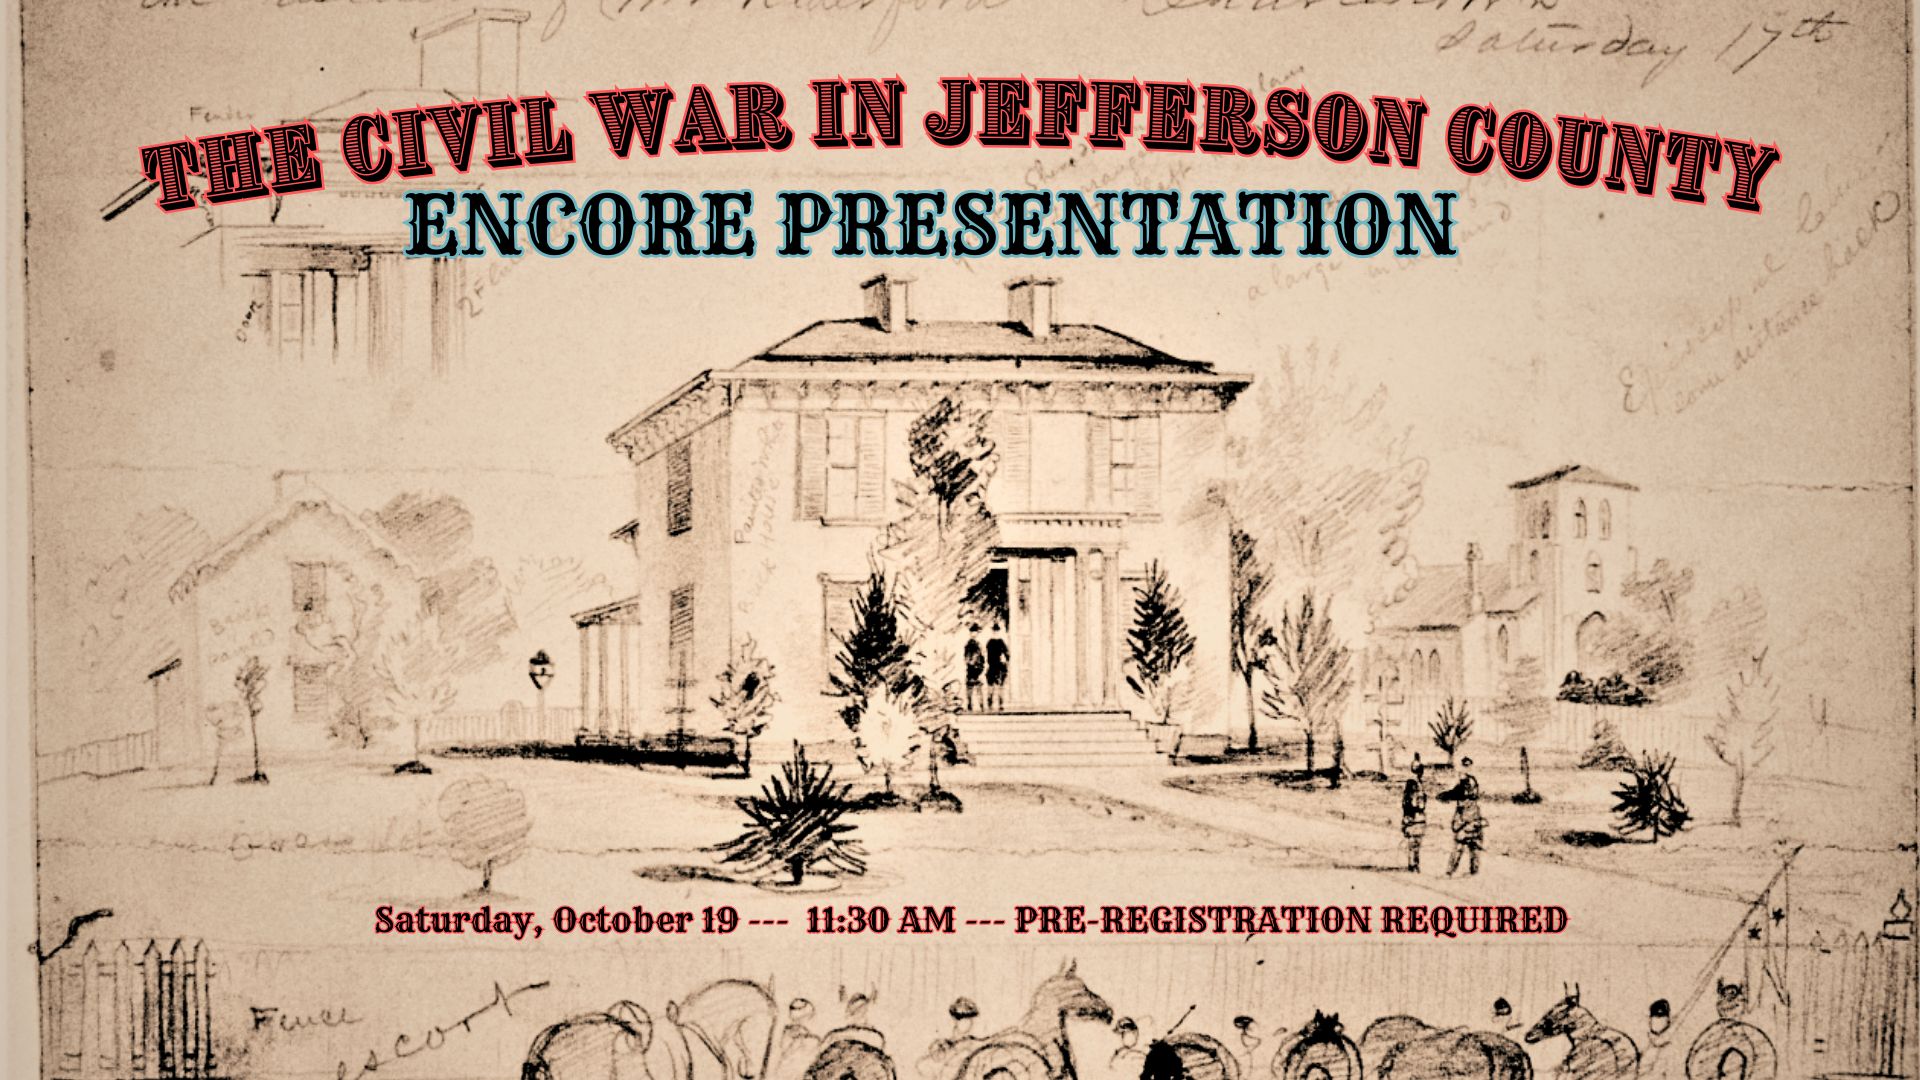 The Civil War in Jefferson County: Encore Presentation